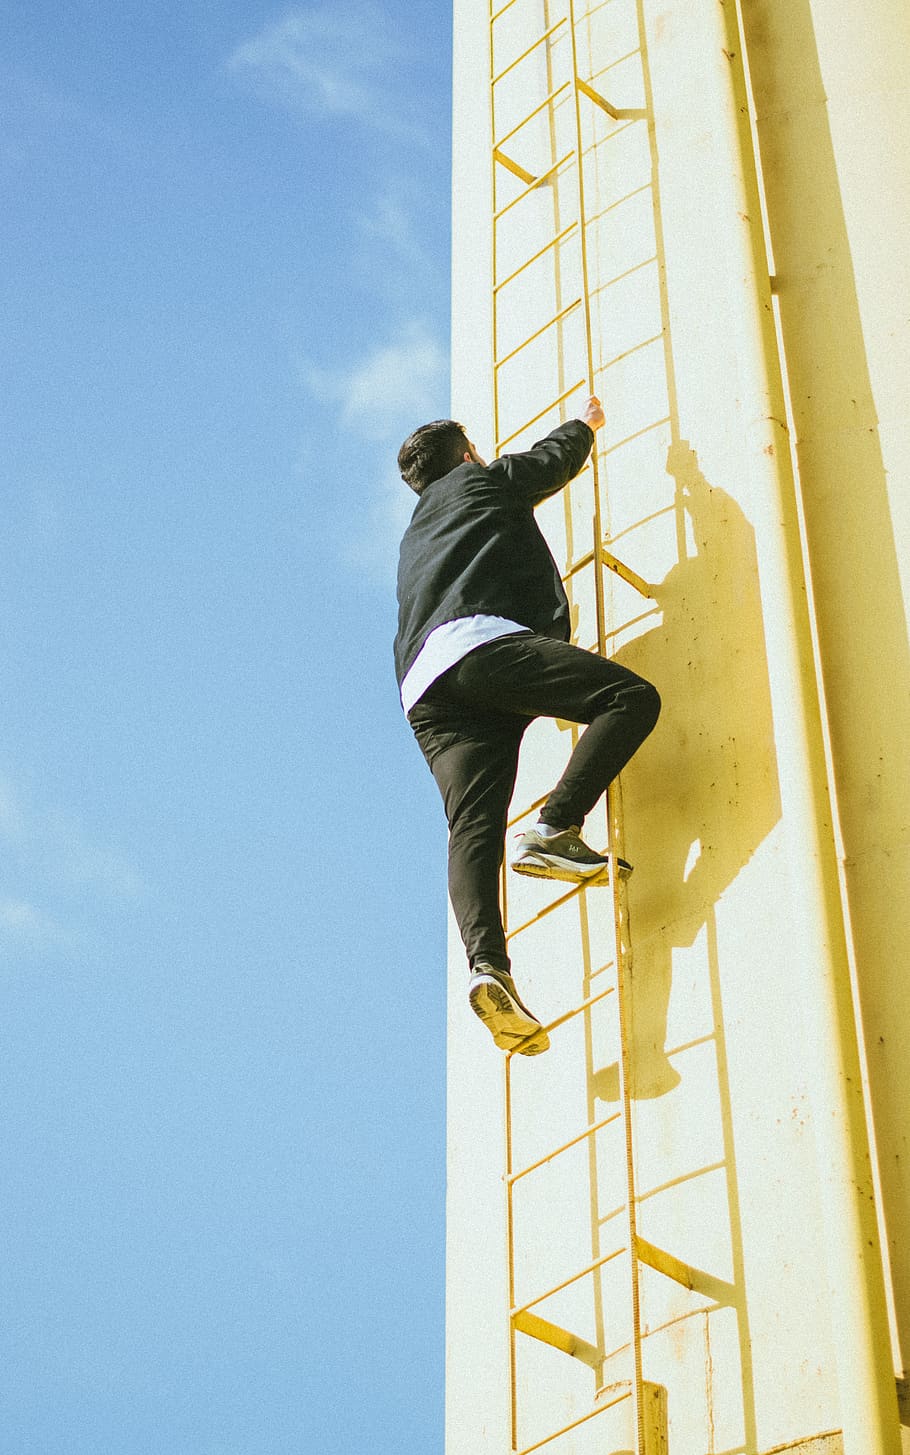 man climbing on ladder during daytime, footwear, shoe, apparel